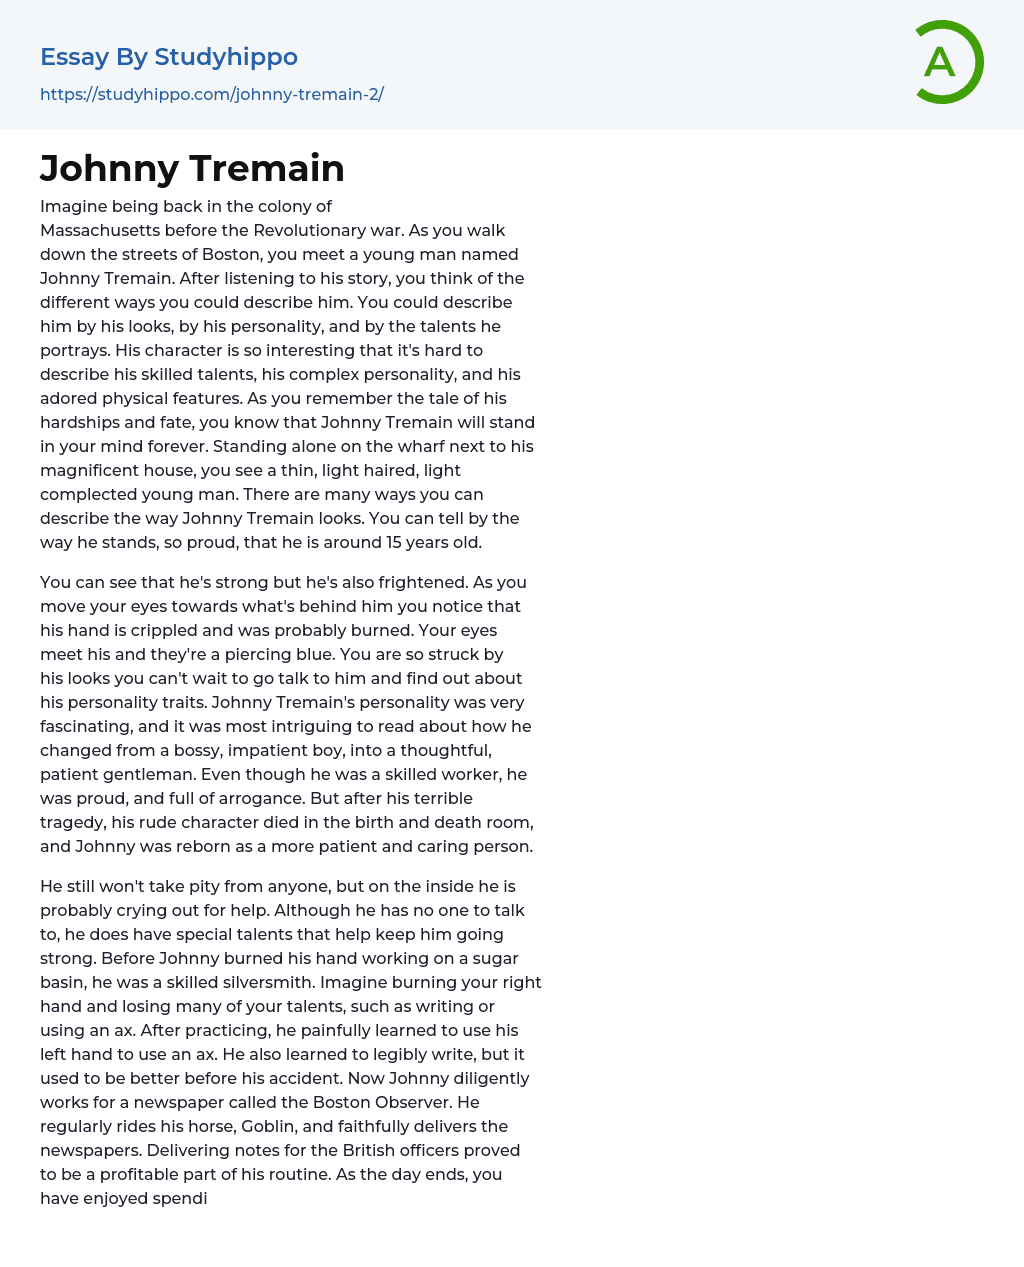 essay topics on johnny tremain